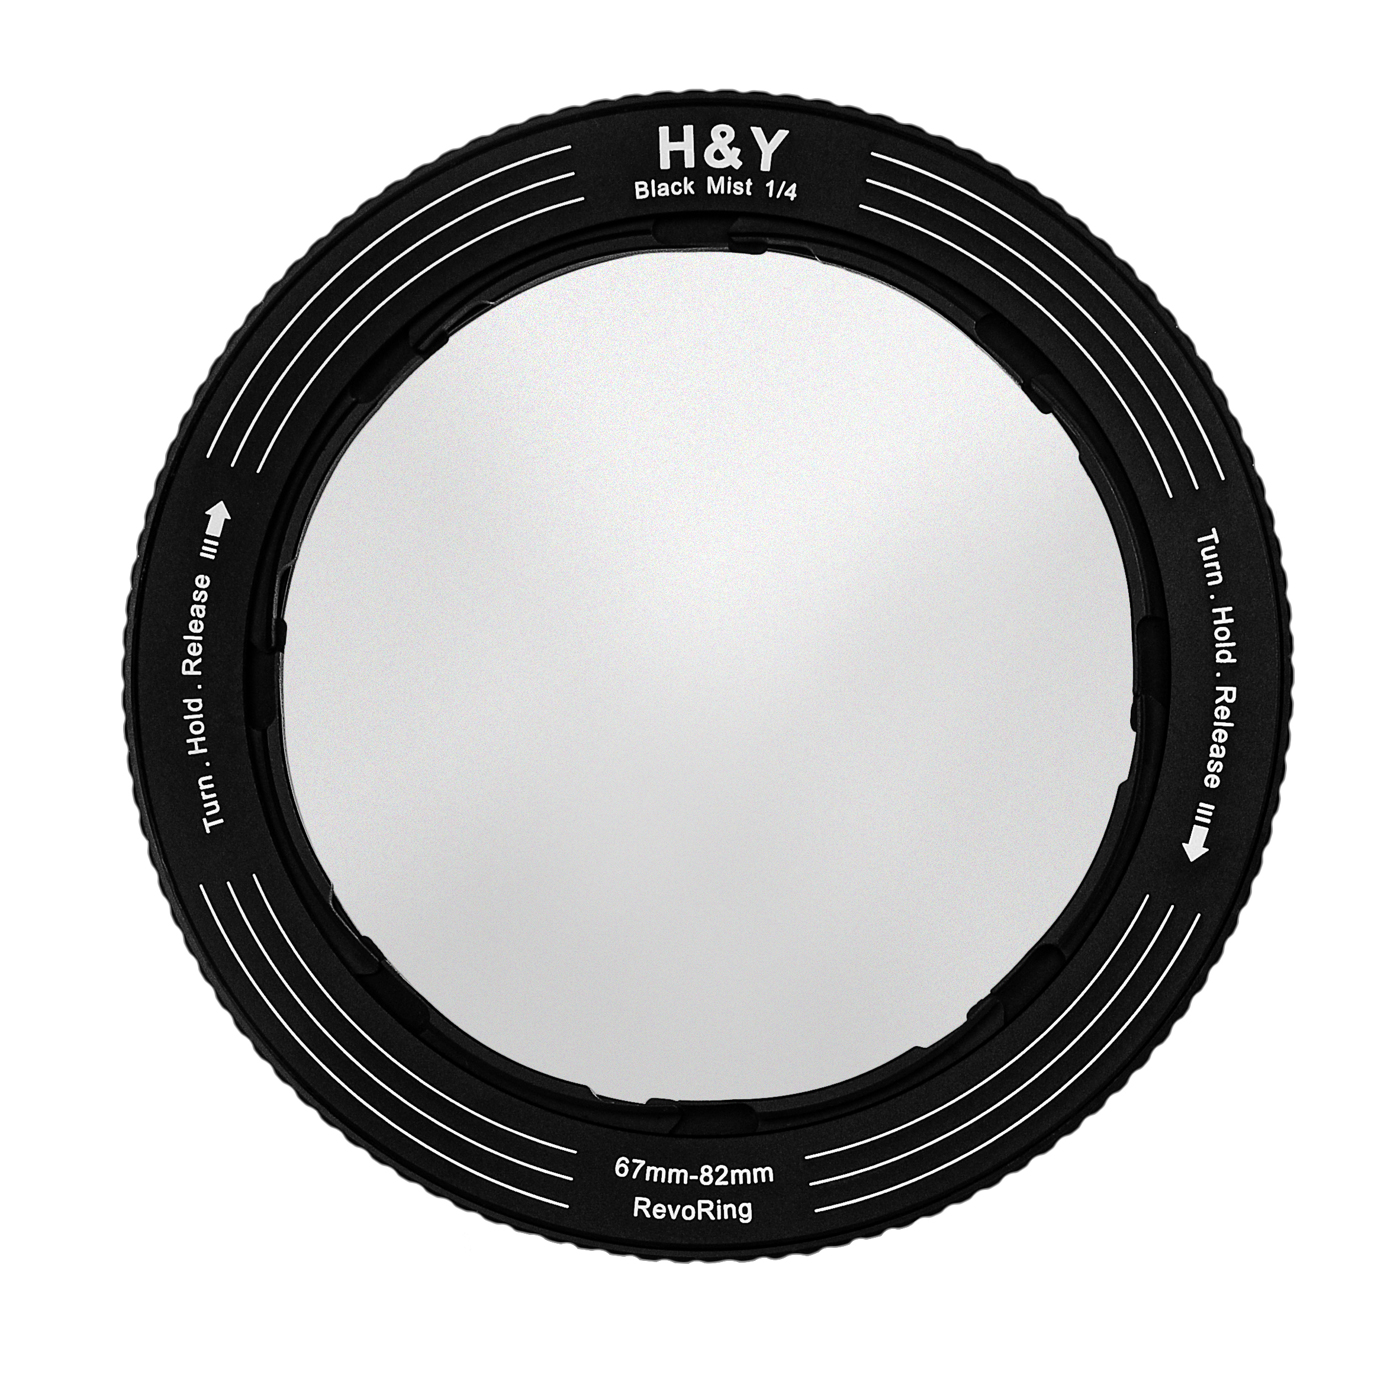 H&Y REVORING 67-82mm Black Mist 1/4 Filter Bild 03